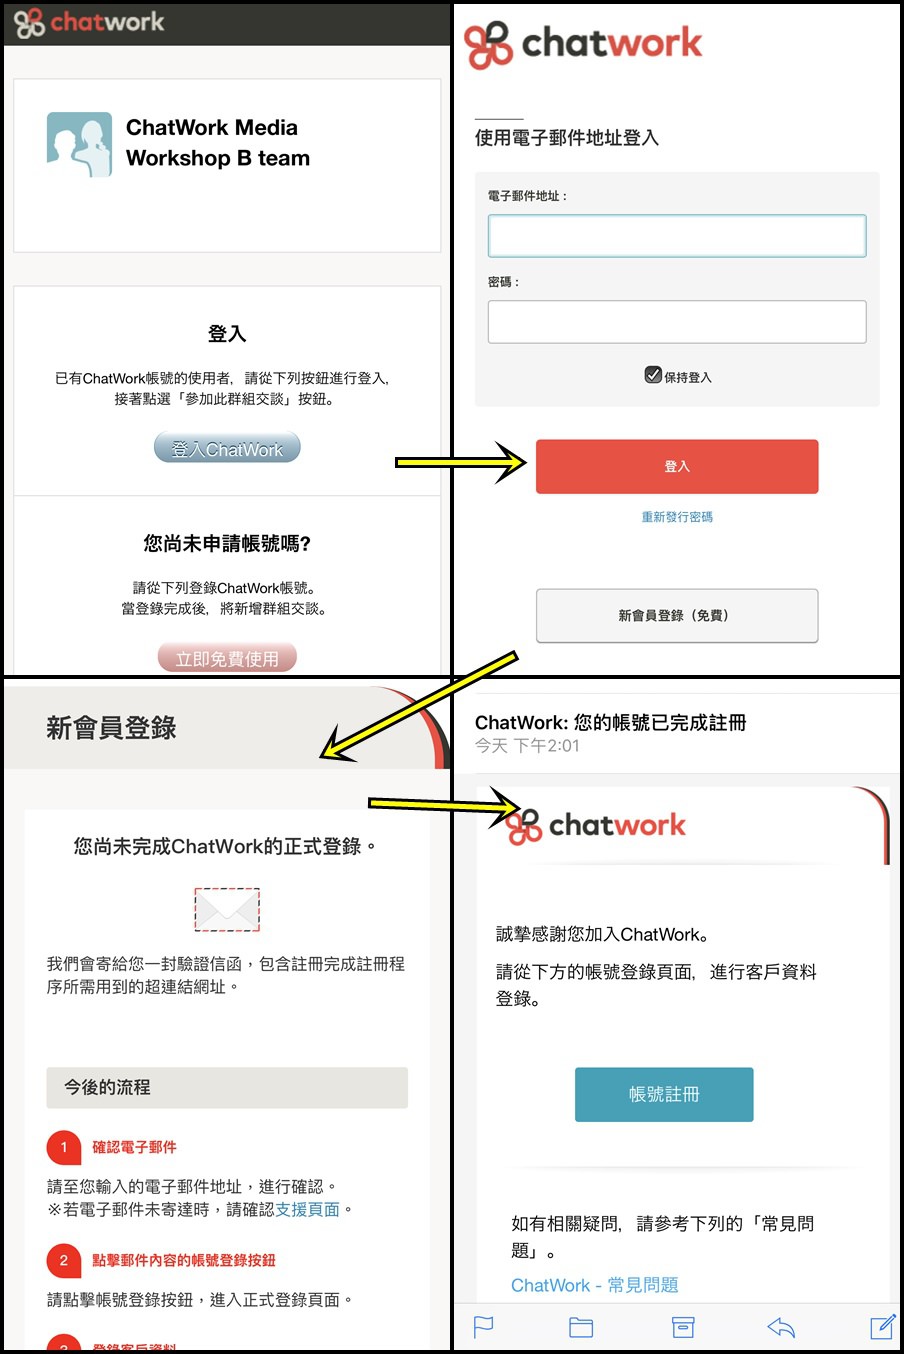 20161201《資訊報報》日本商用第一通訊軟體ChatWork讓你輕鬆擁有雲端會議室。ChatWork尾牙提案競賽搶優勝得十萬元尾牙基金︱ (1).jpg